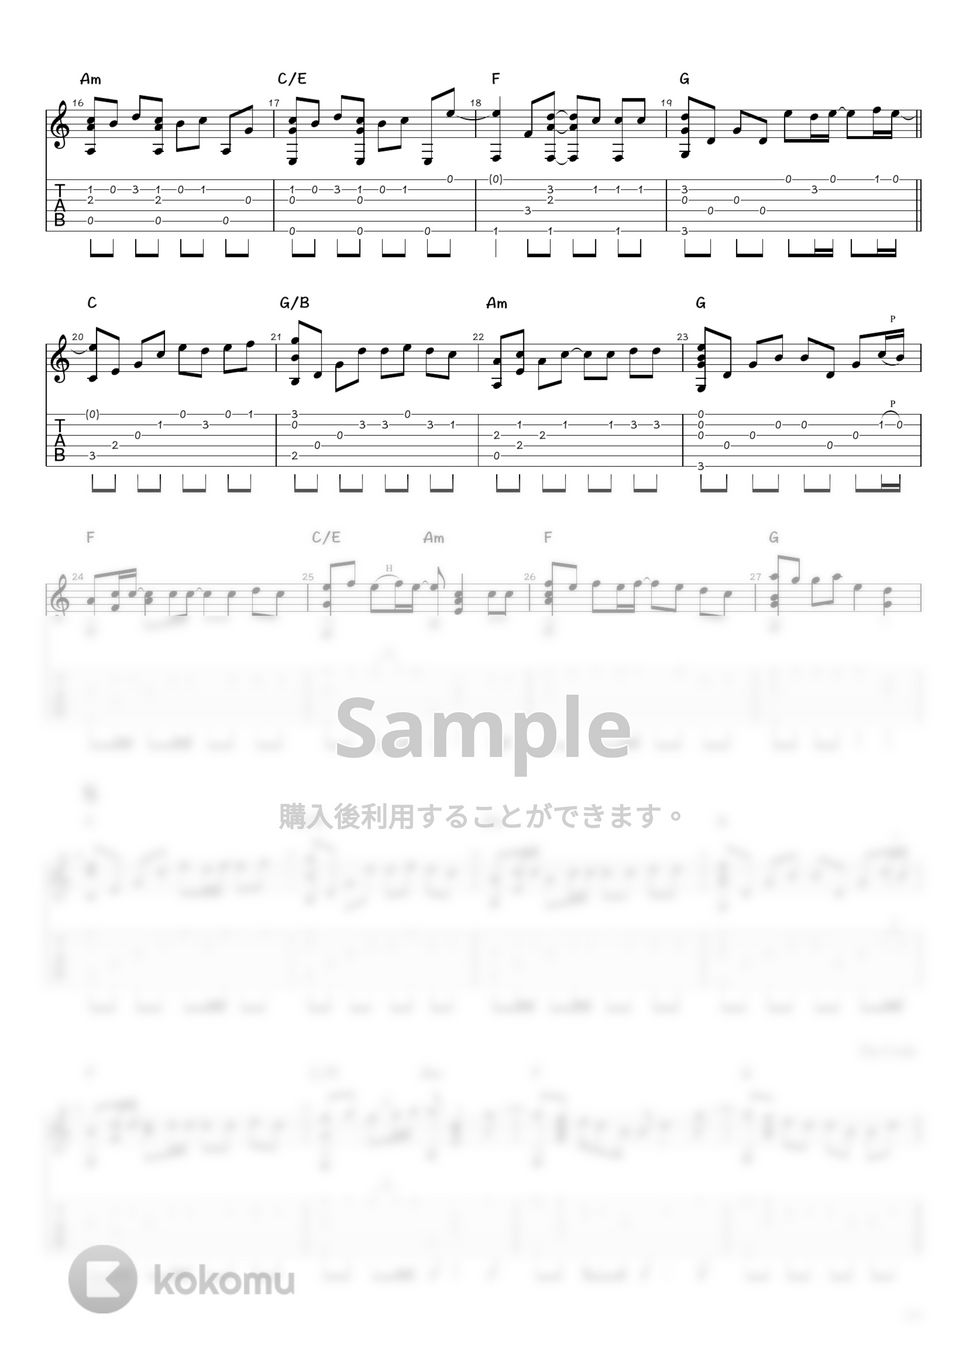 あいみょん - マリーゴールド (ソロギター / タブ譜) by 井上さとみ